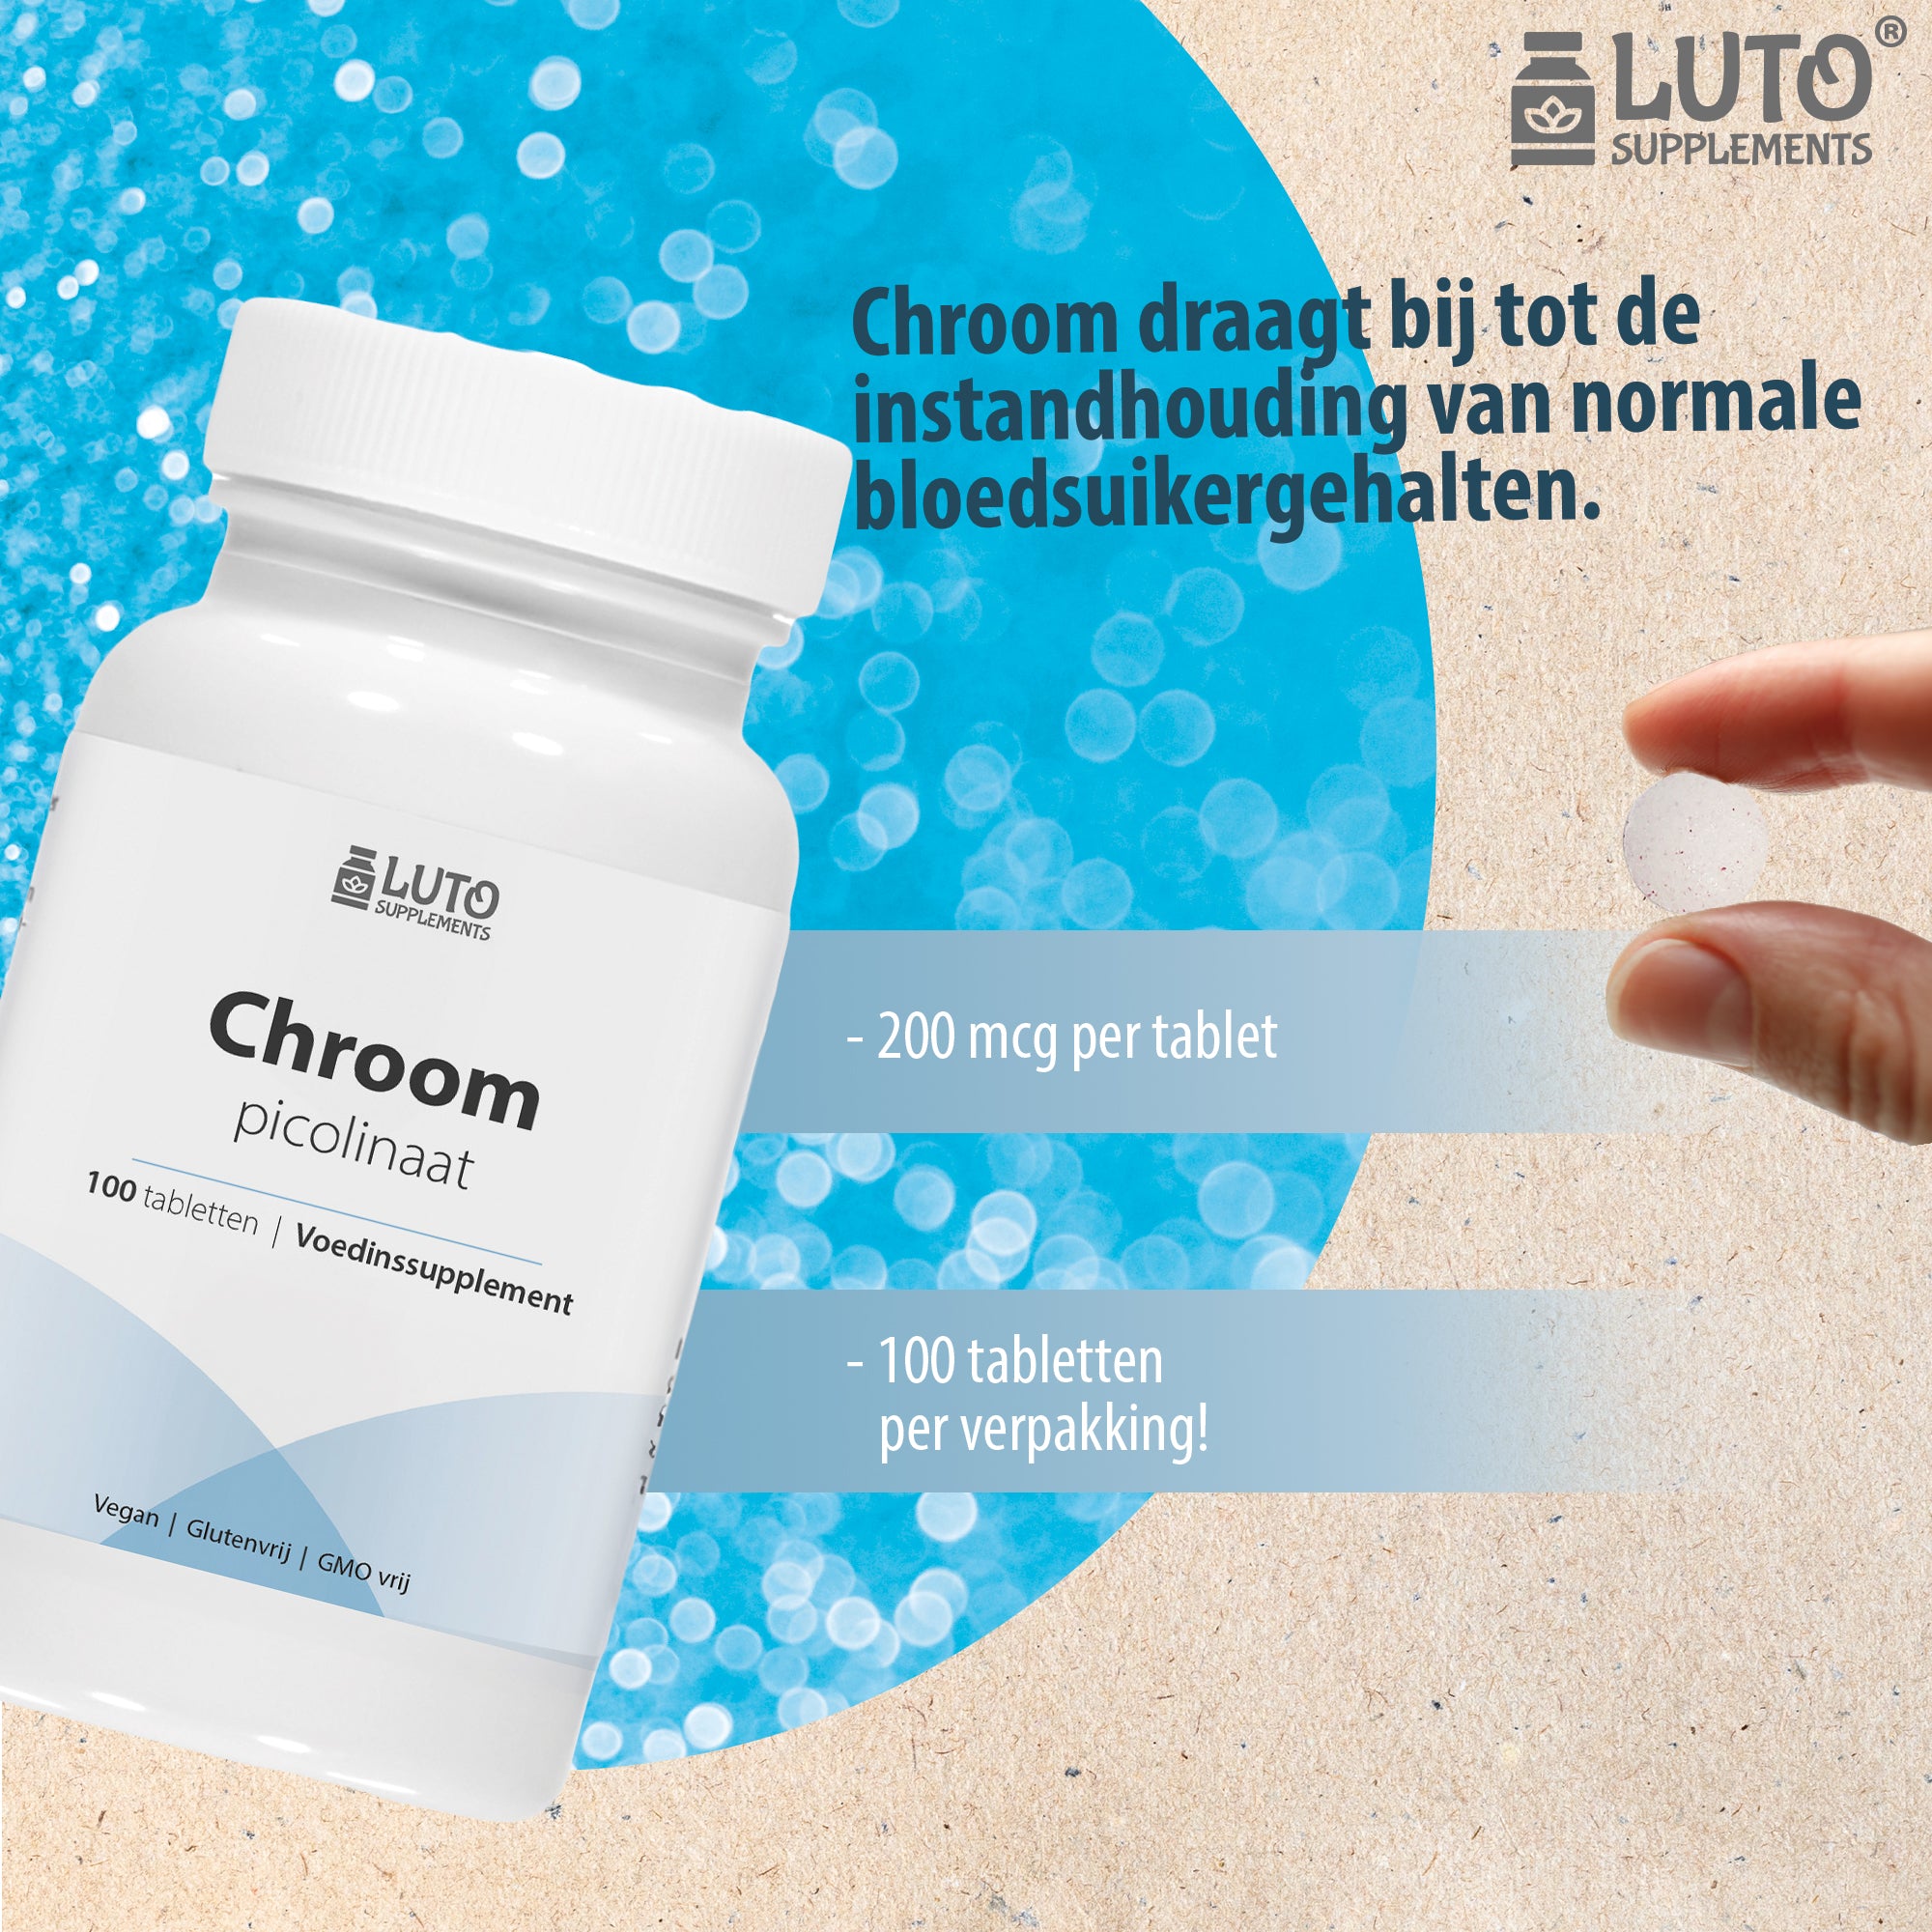 Chroom / Chromium Picolinaat | 200mg | 100 Tabletten | Organische verbinding | Ondersteunt het bloedsuikergehalte normaal te houden | Vegan | LUTO Supplements